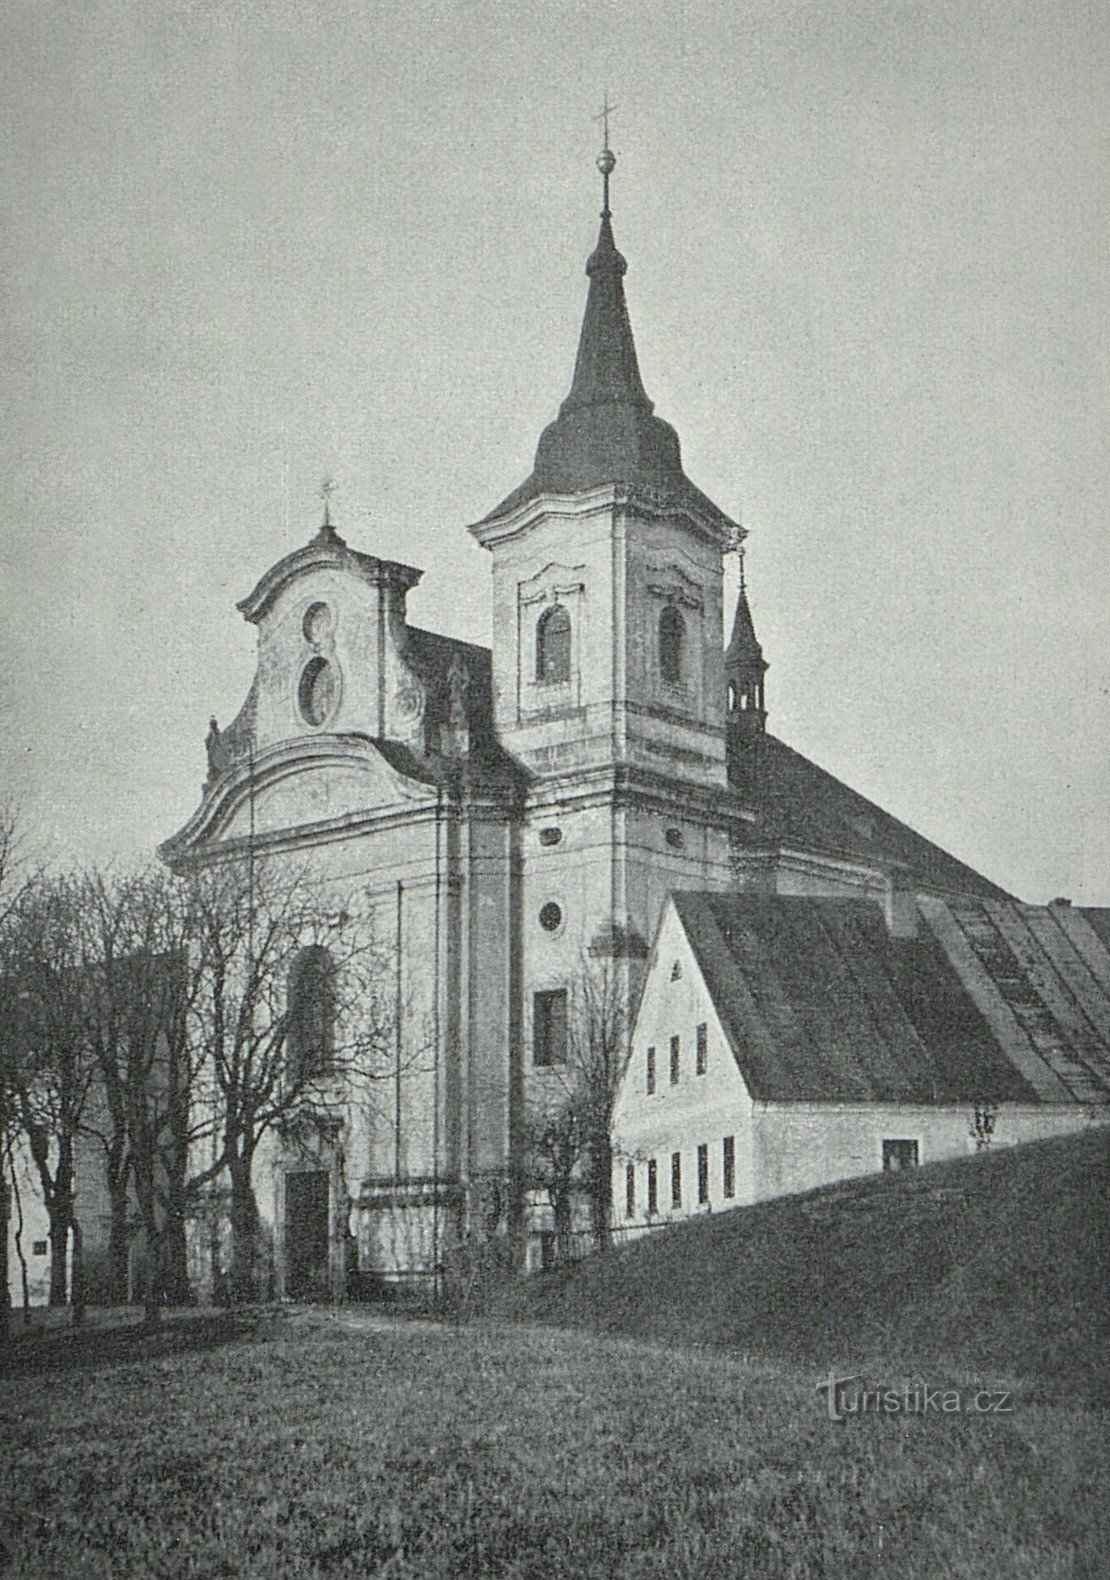 Samostanska crkva u Nové Paci prije 1909